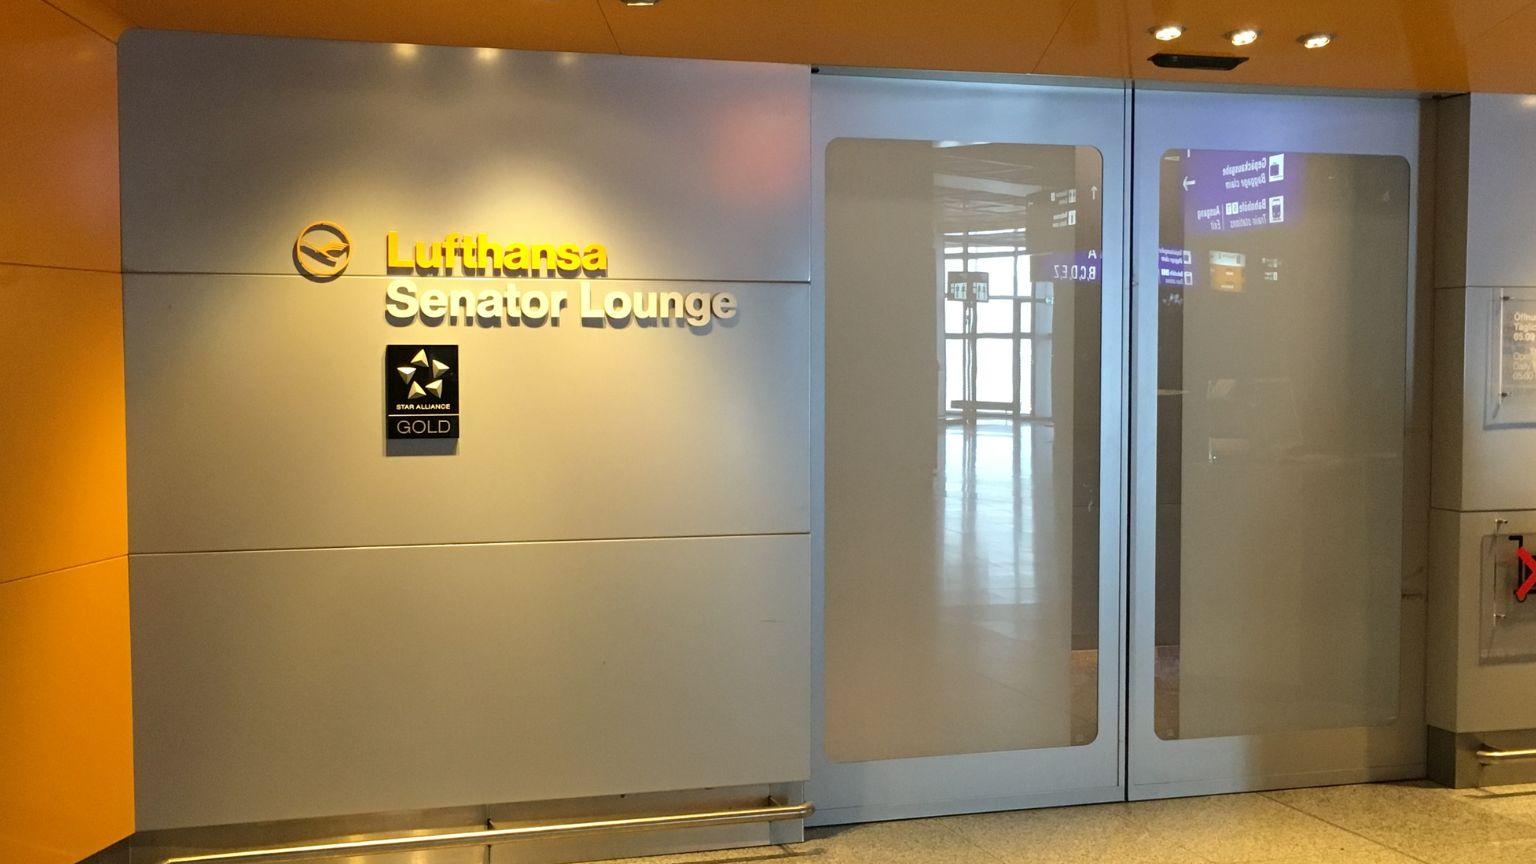 Lufthansa Senator Lounge, Terminal 1 JFK